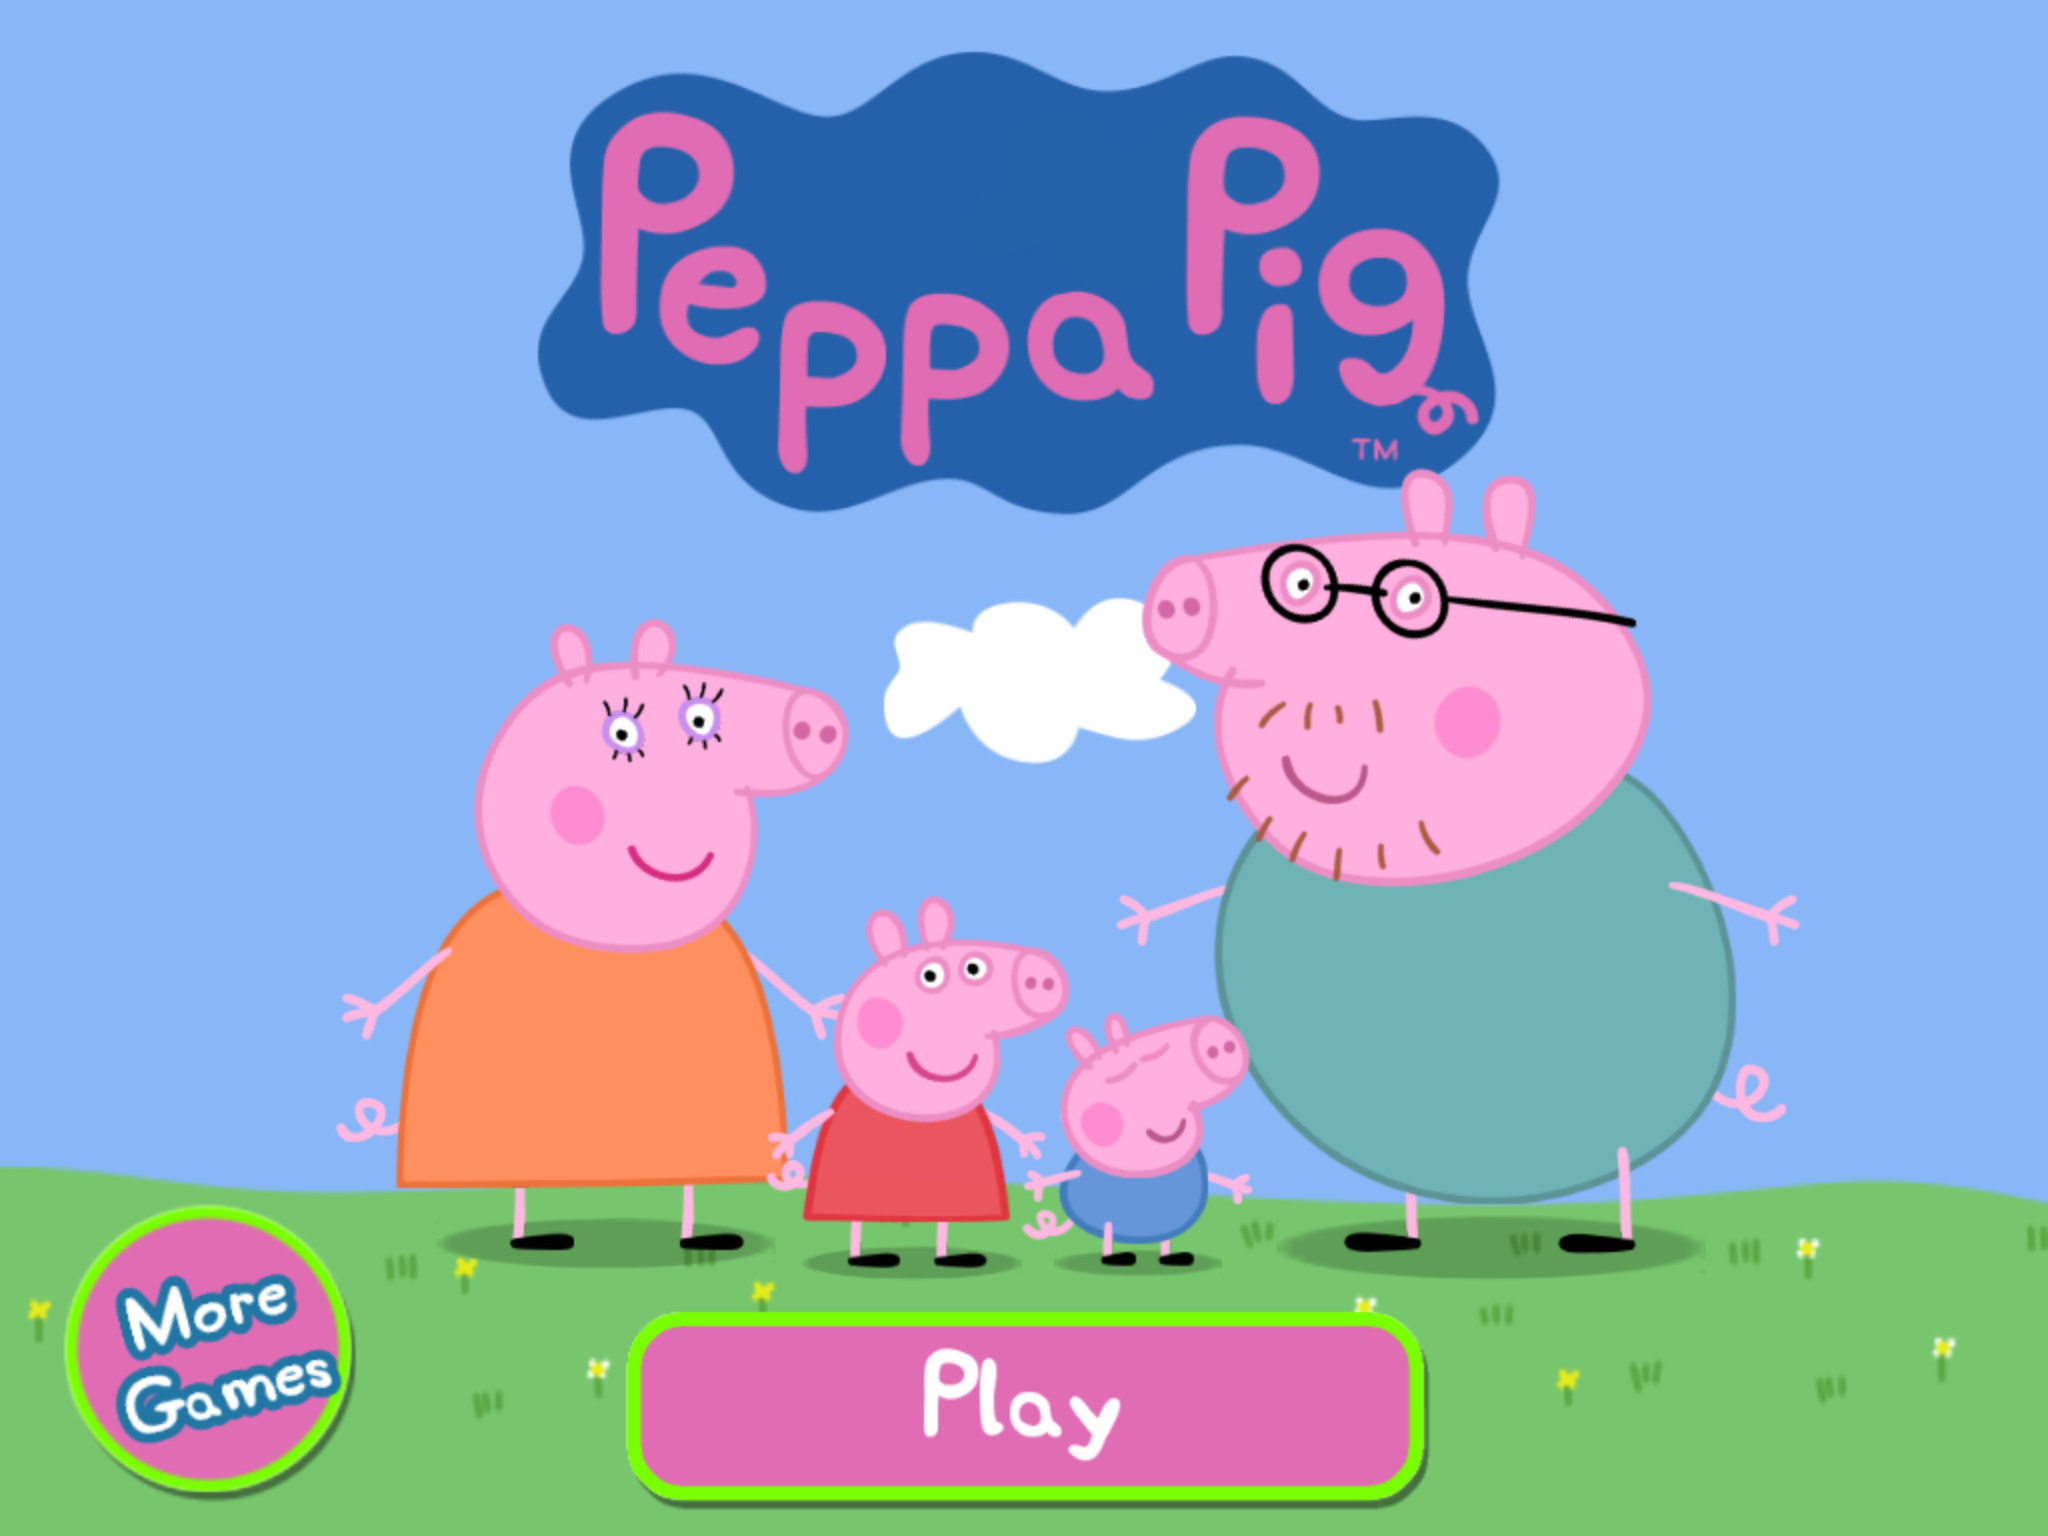 Играть пепу. Свинка Пеппа. Пеппа Пиг игра. С̠в̠и̠н̠к̠а̠ П̠э̠п̠а̠ и̠г̠з̠и̠. Приложение Свинка Пеппа.